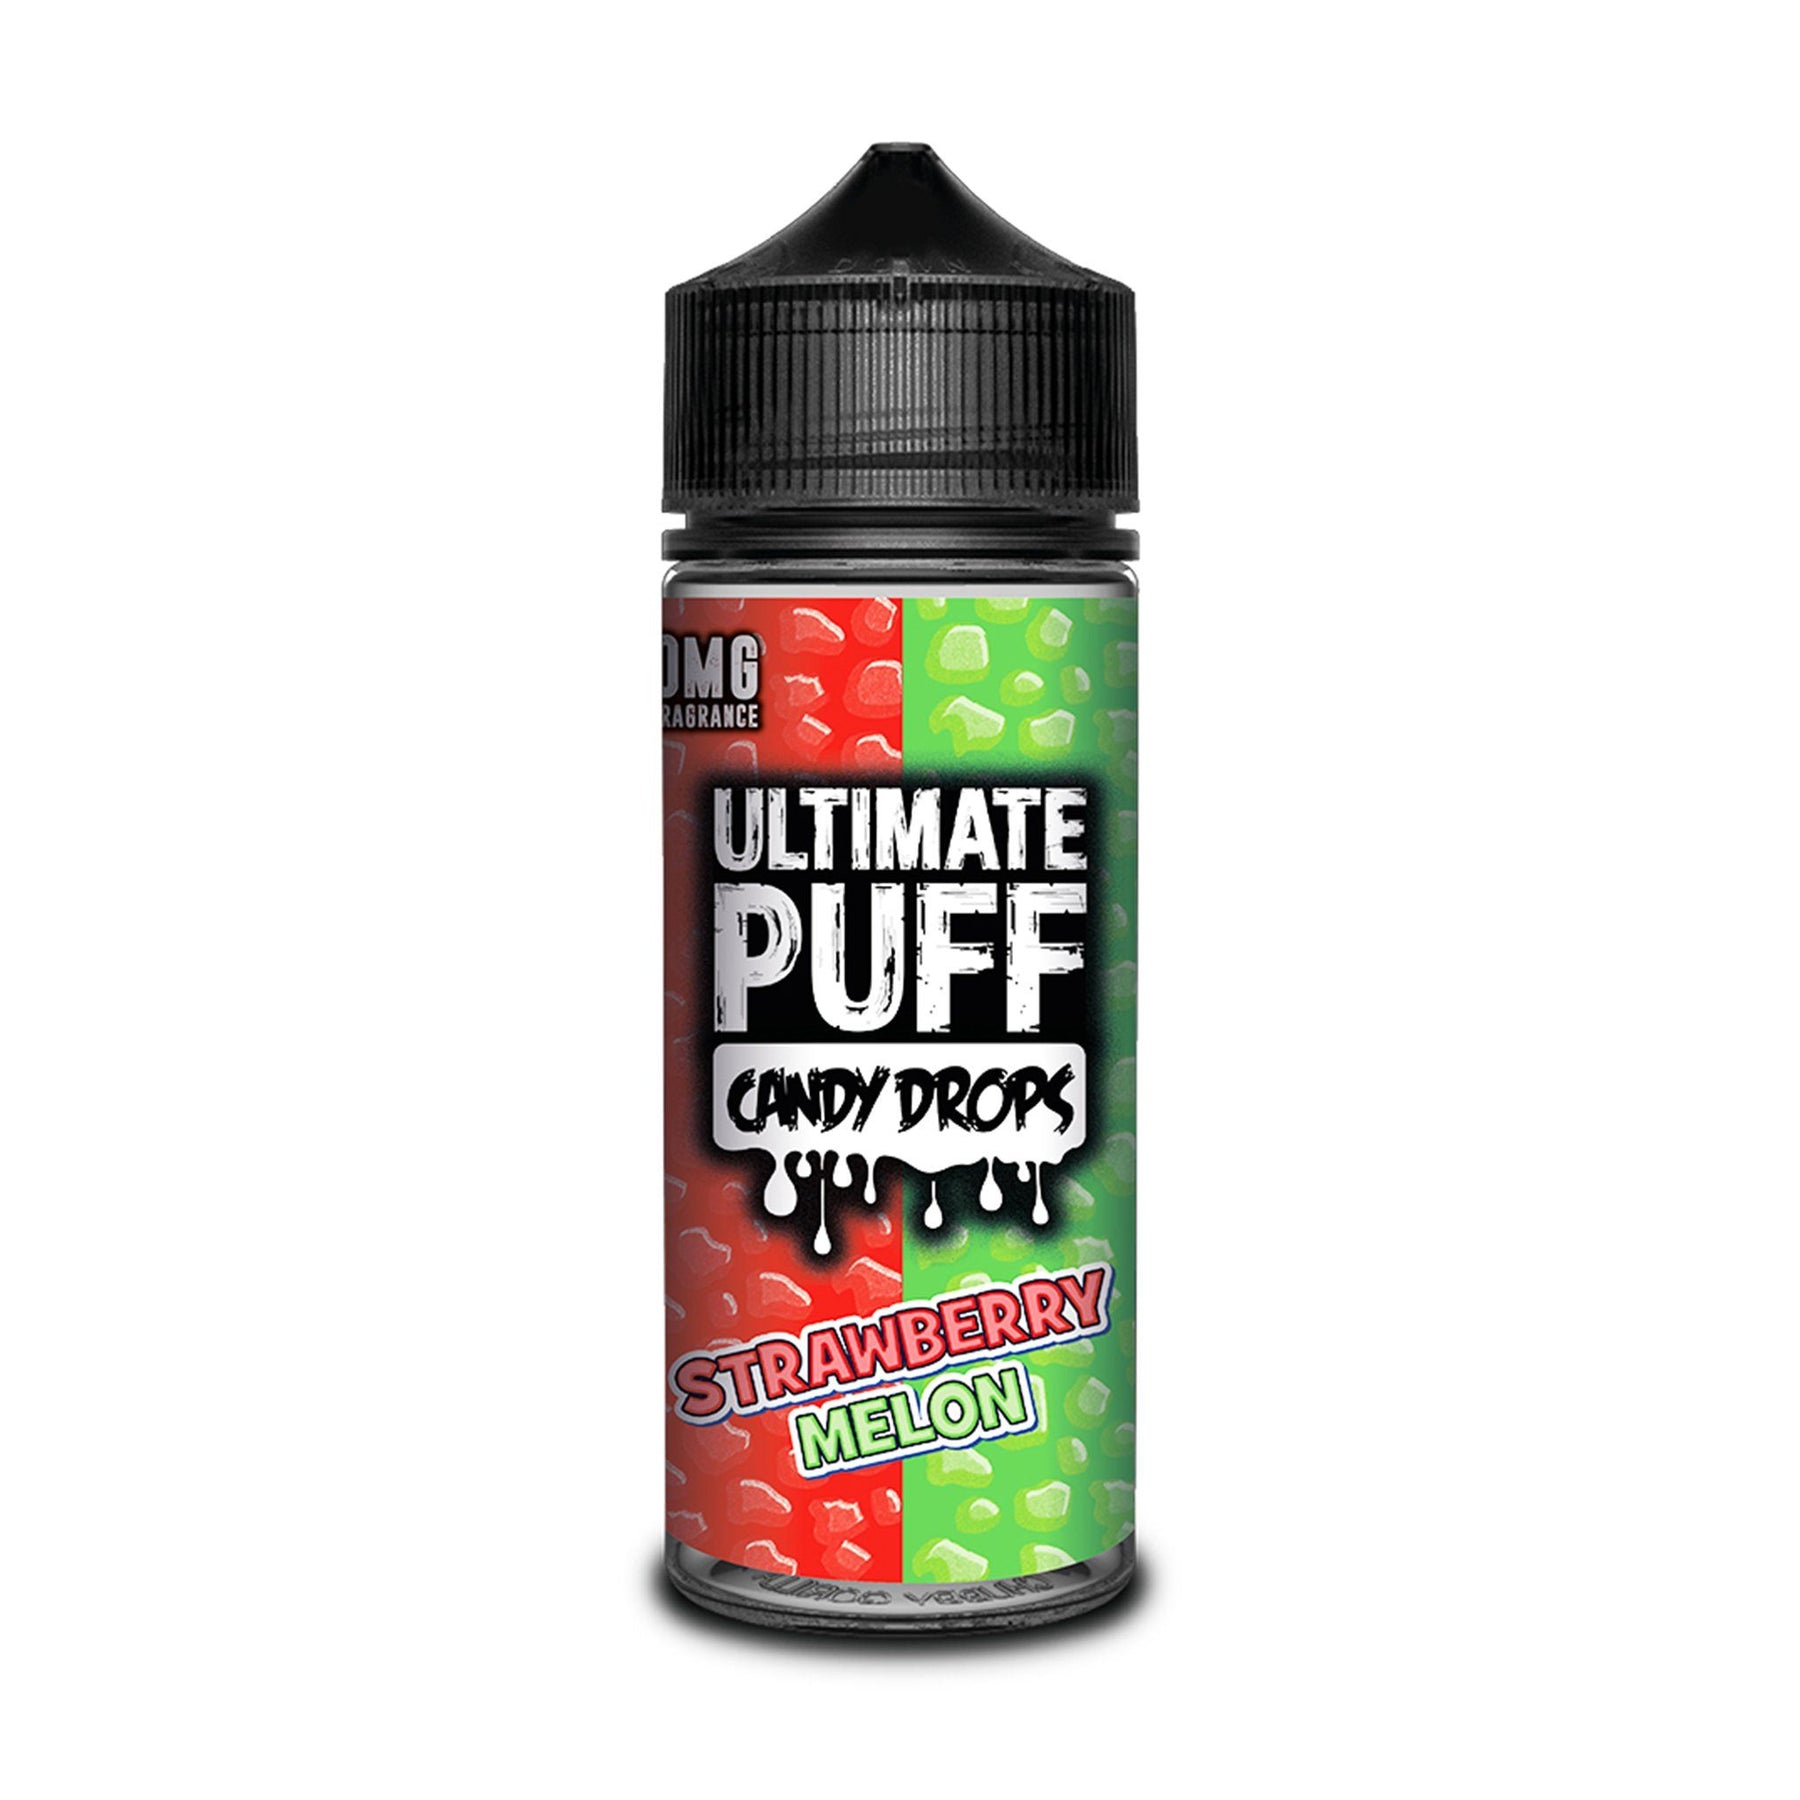 Ultimate Puff Short Fill E-Liquid Strawberry Melon Candy Drops